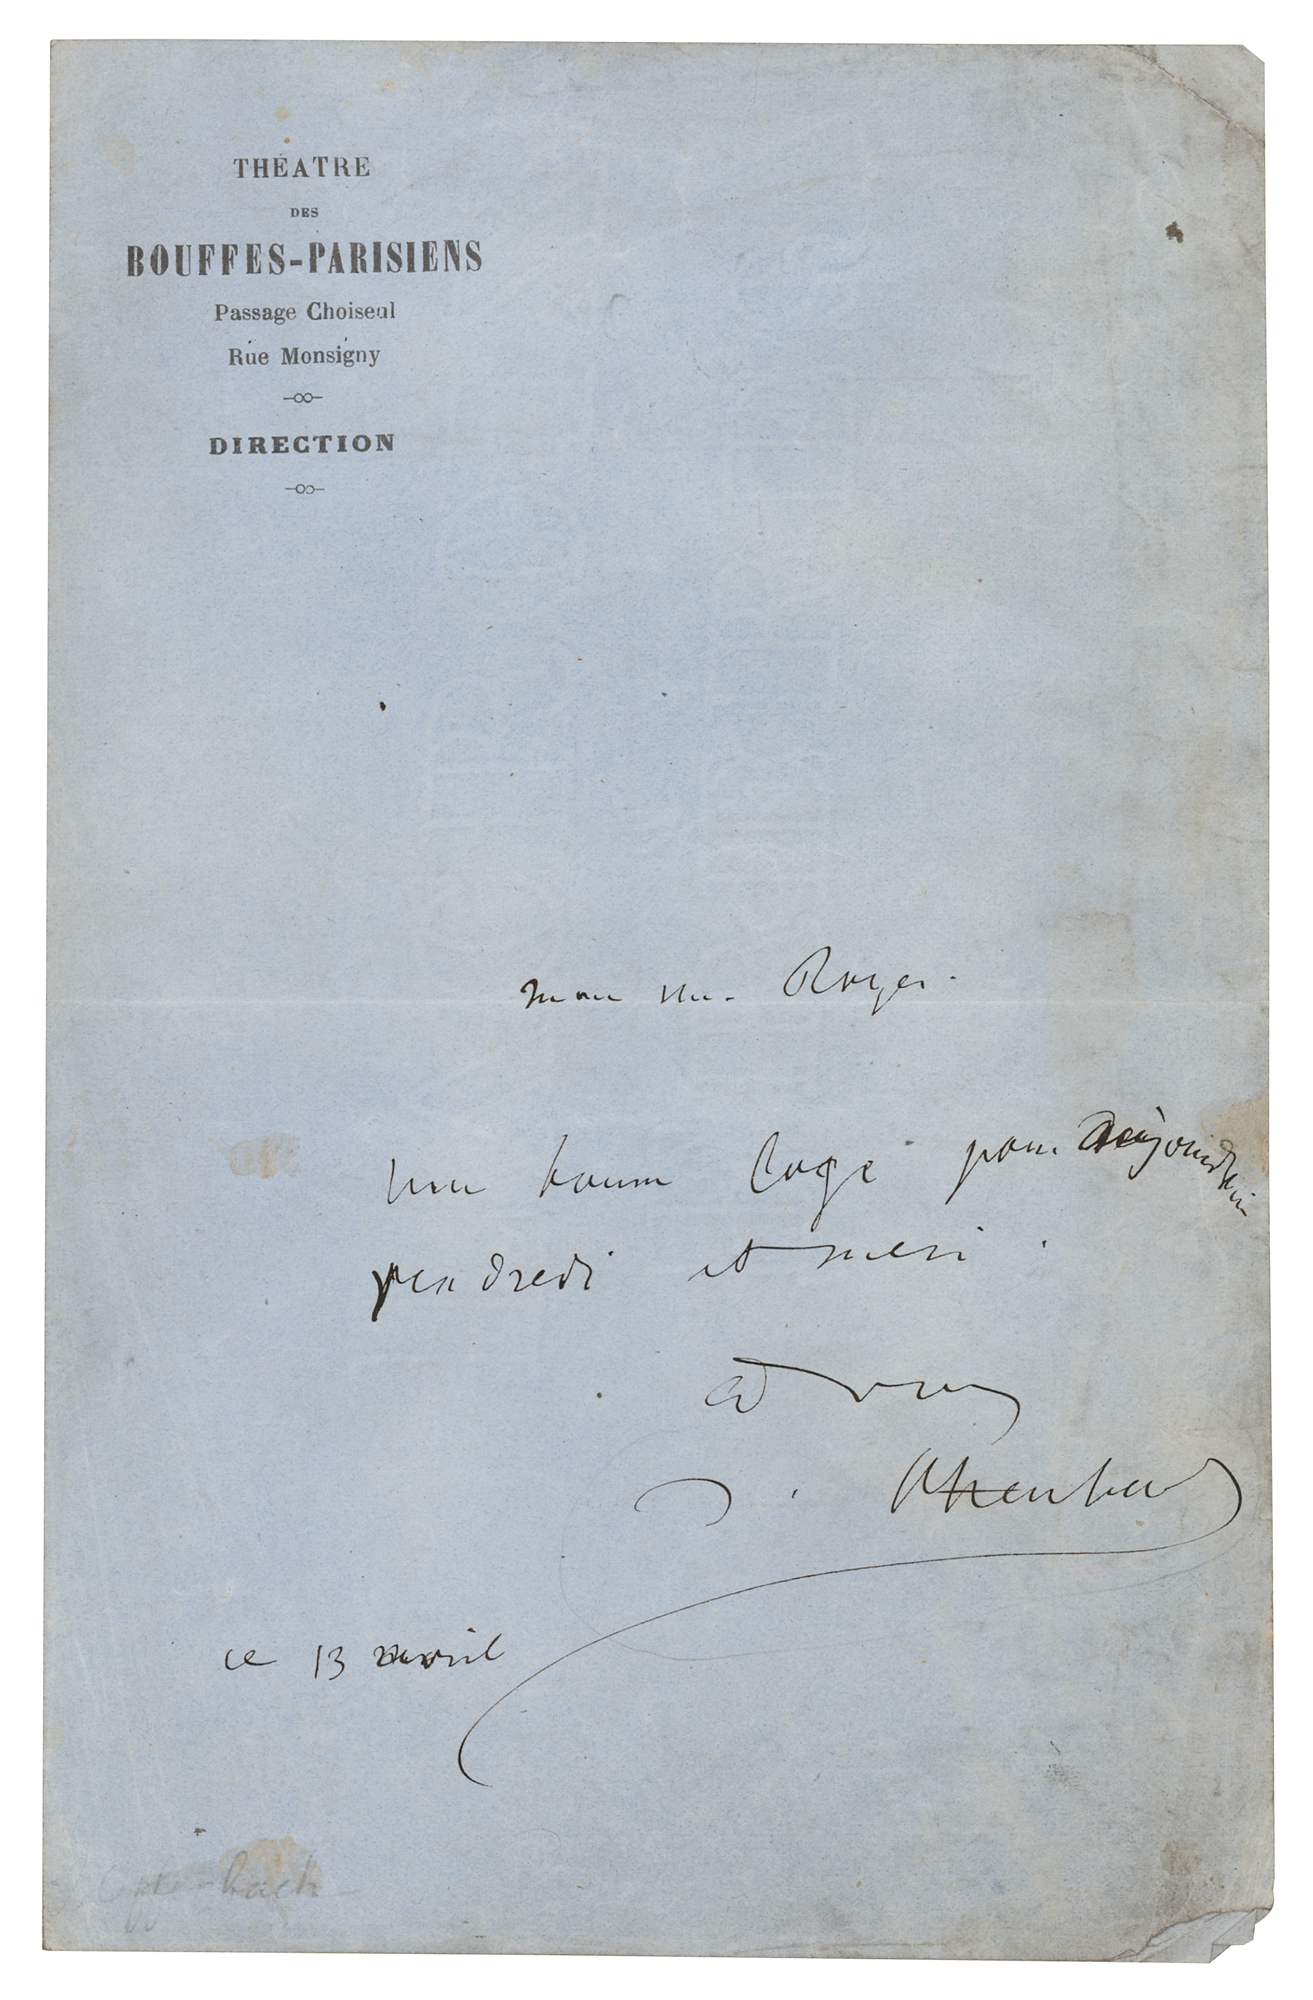 Lot #555 Jacques Offenbach Autograph Letter Signed